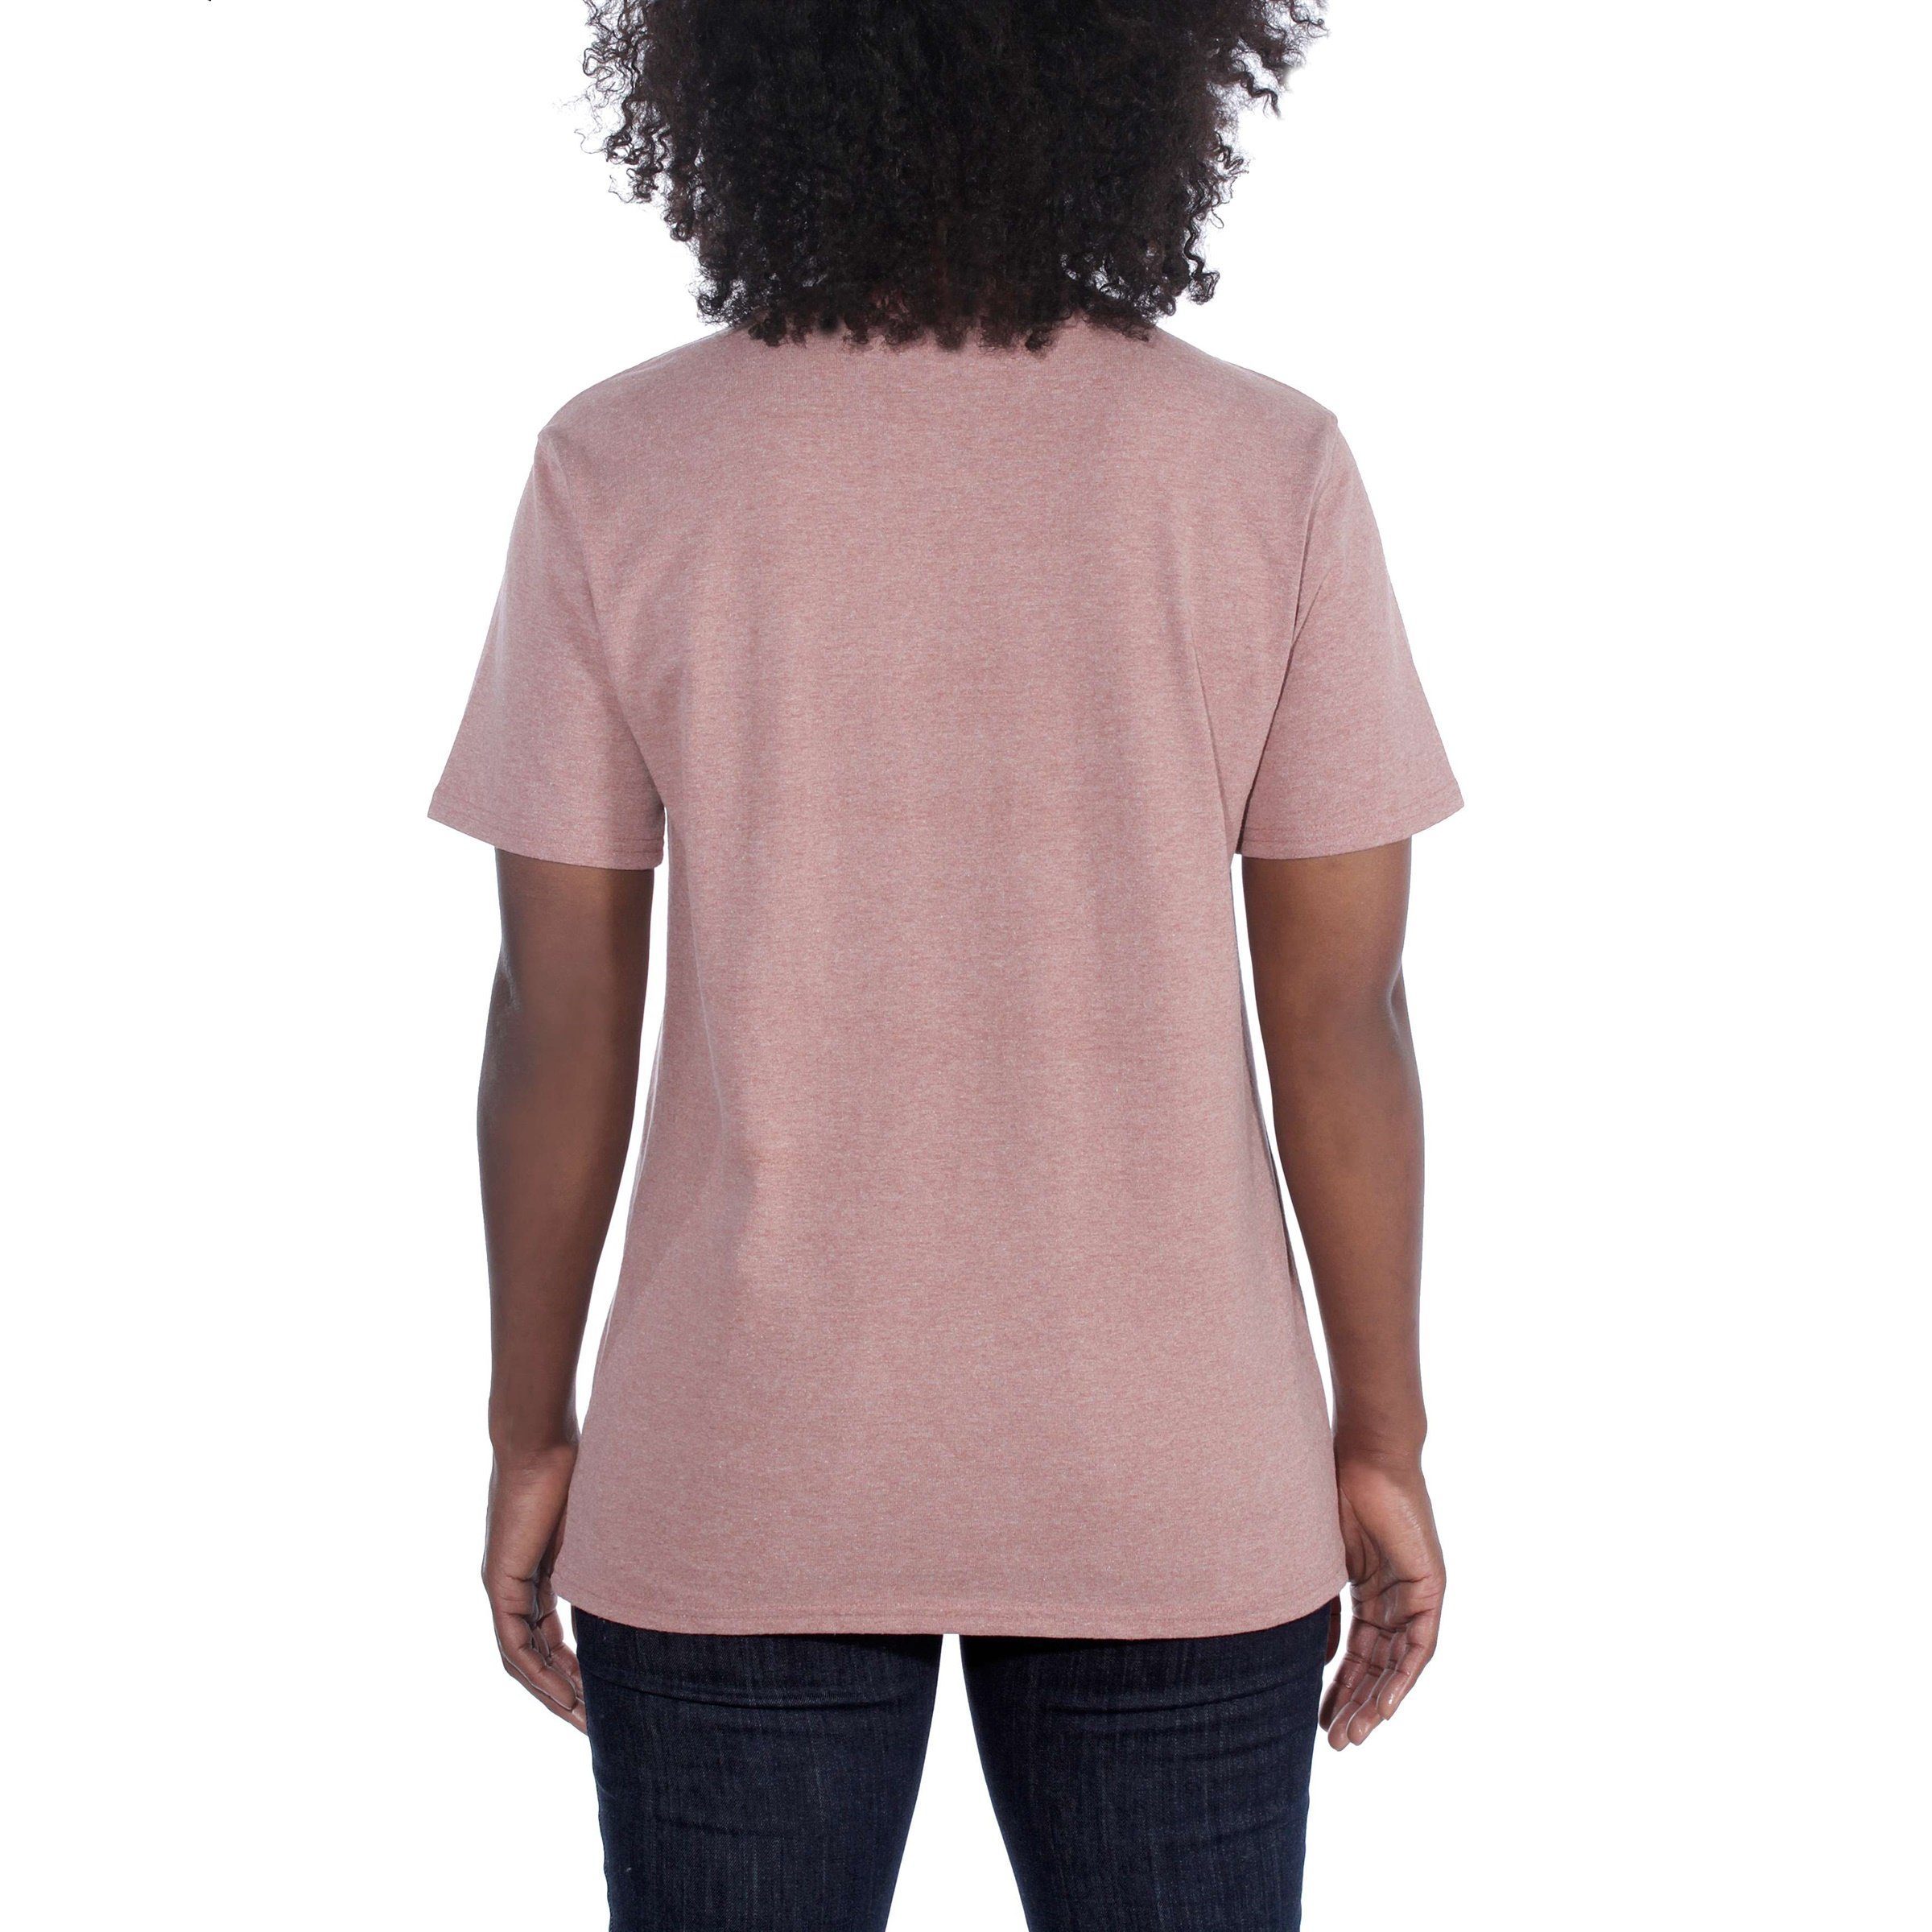 T-Shirt Damen T-Shirt heather Carhartt Fit Heavyweight currant Carhartt Short-Sleeve Adult Loose Pocket